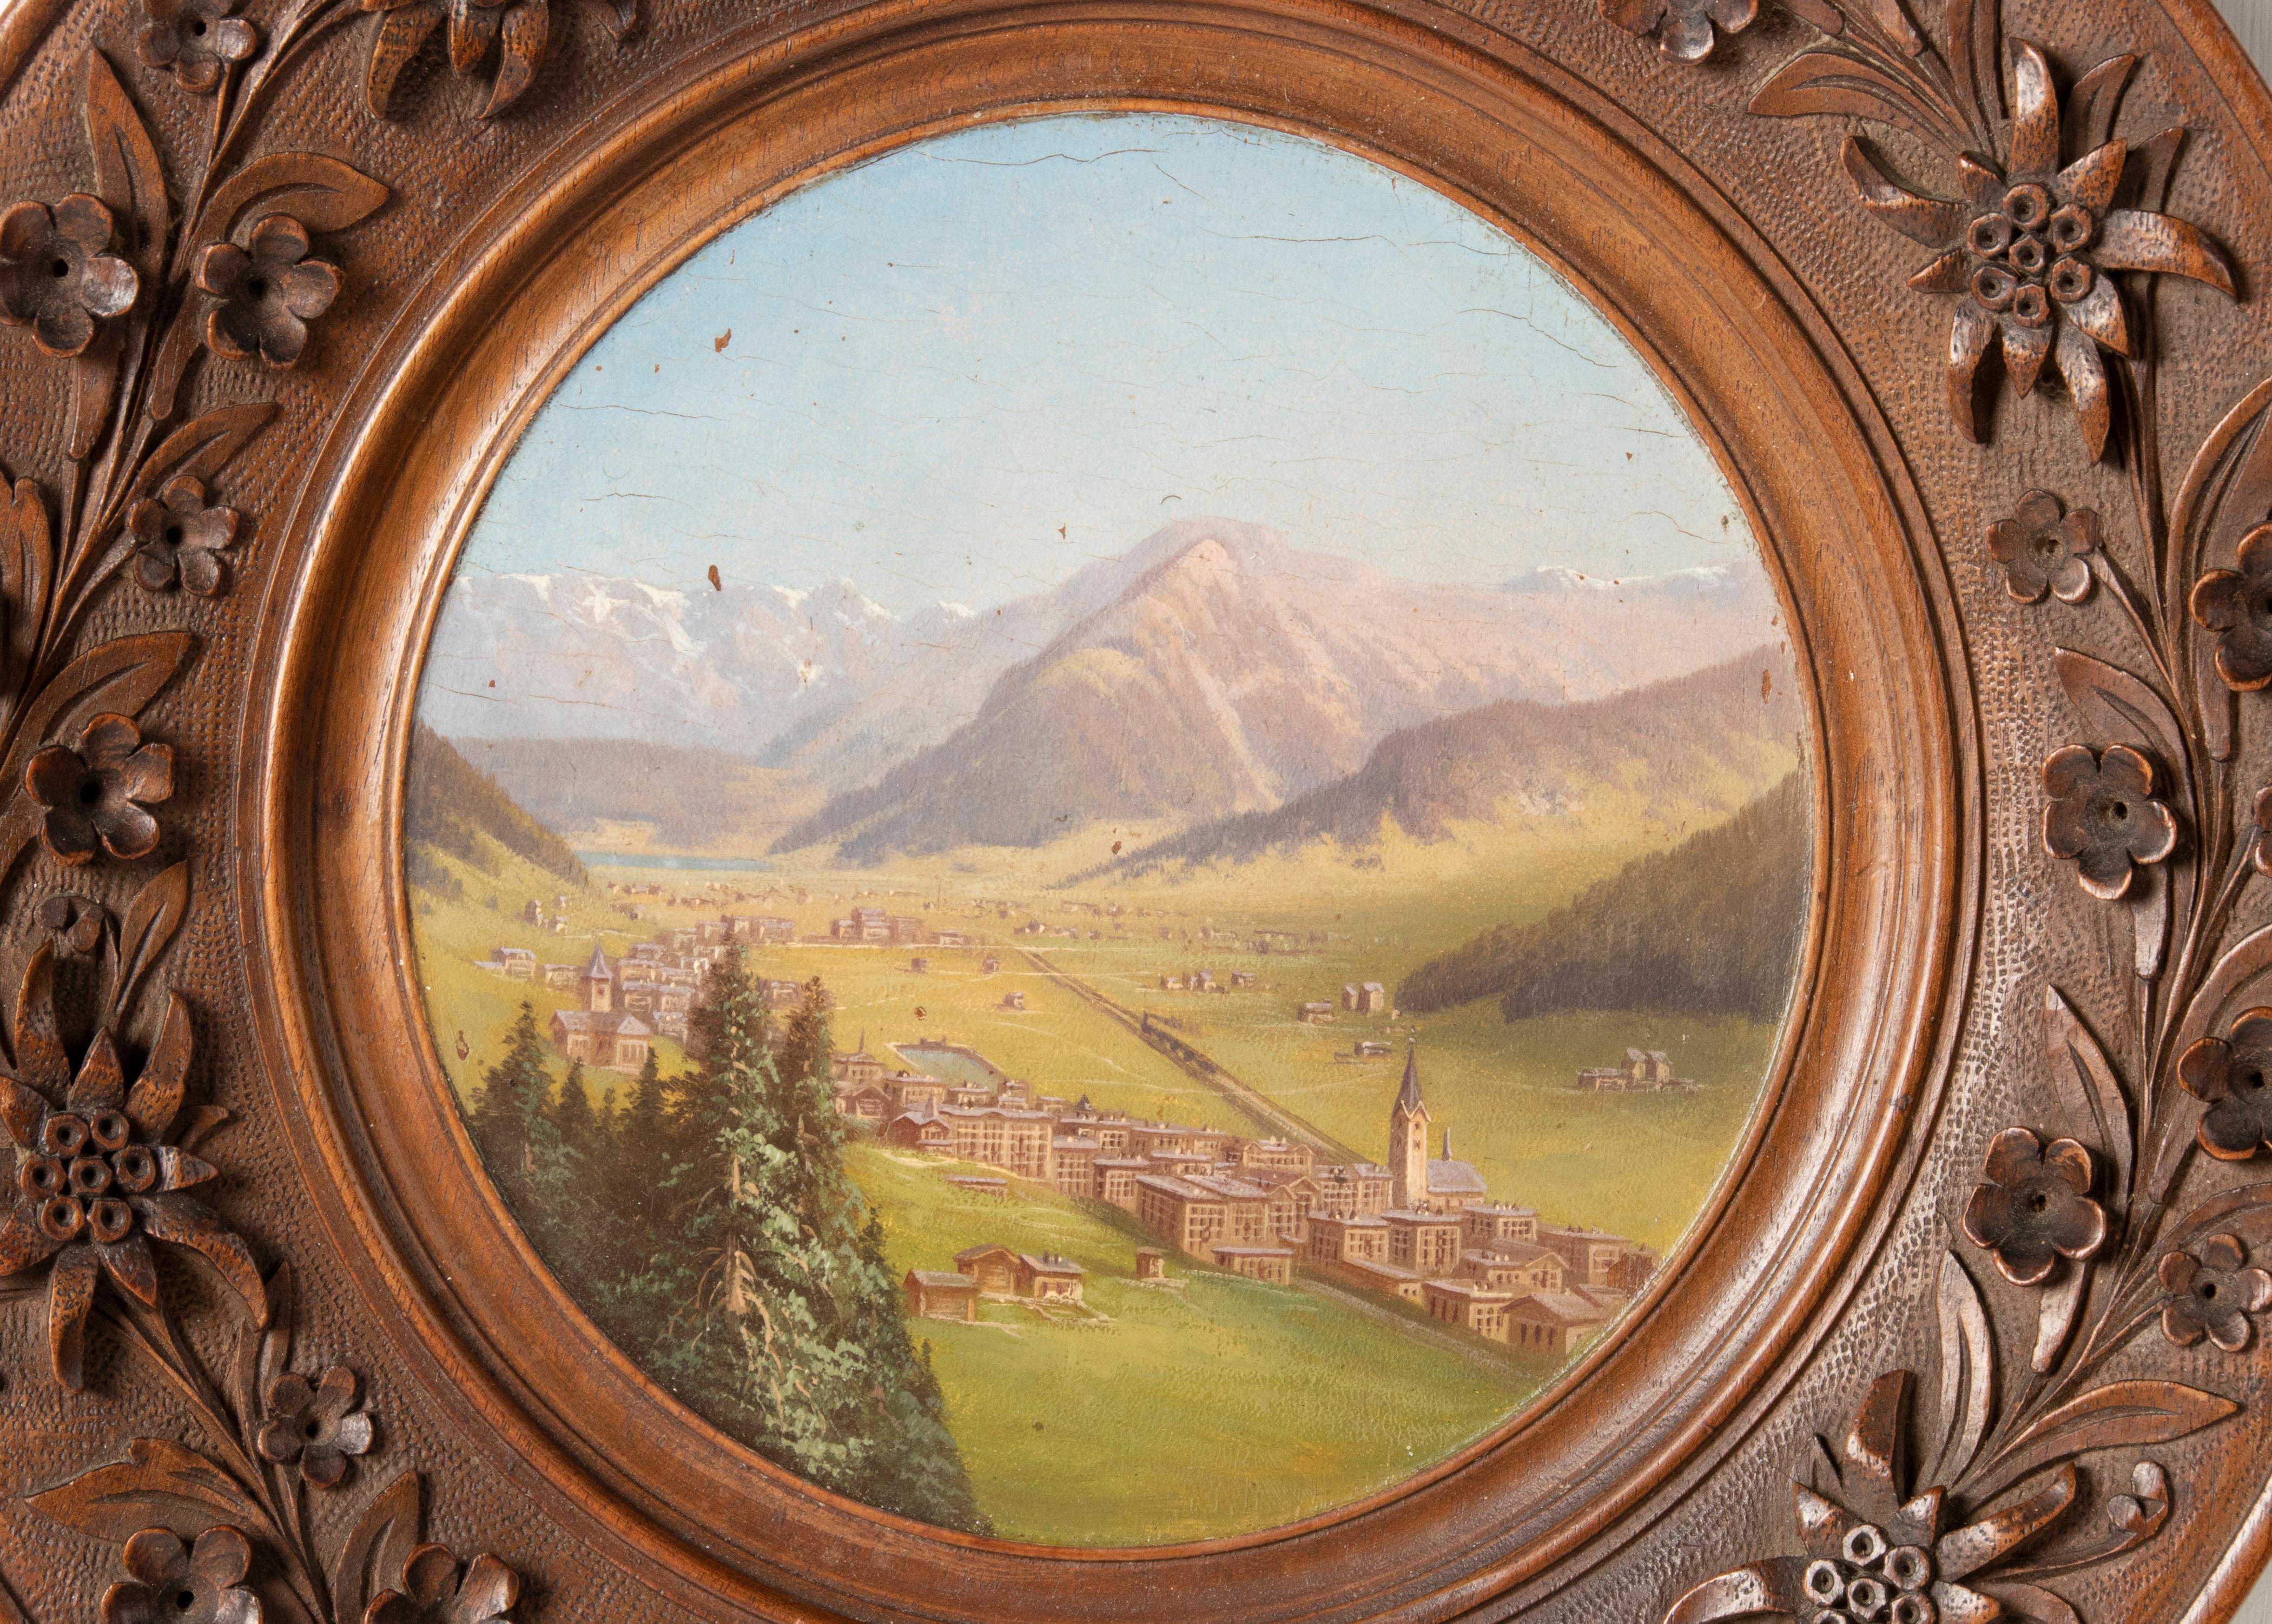 Une peinture ancienne d'un paysage alpin dans un cadre en bois de la Forêt-Noire. Le tableau montre un village suisse dans une vallée. Il est magnifiquement peint avec une utilisation de couleurs douces. Le cadre est sculpté à la main avec des